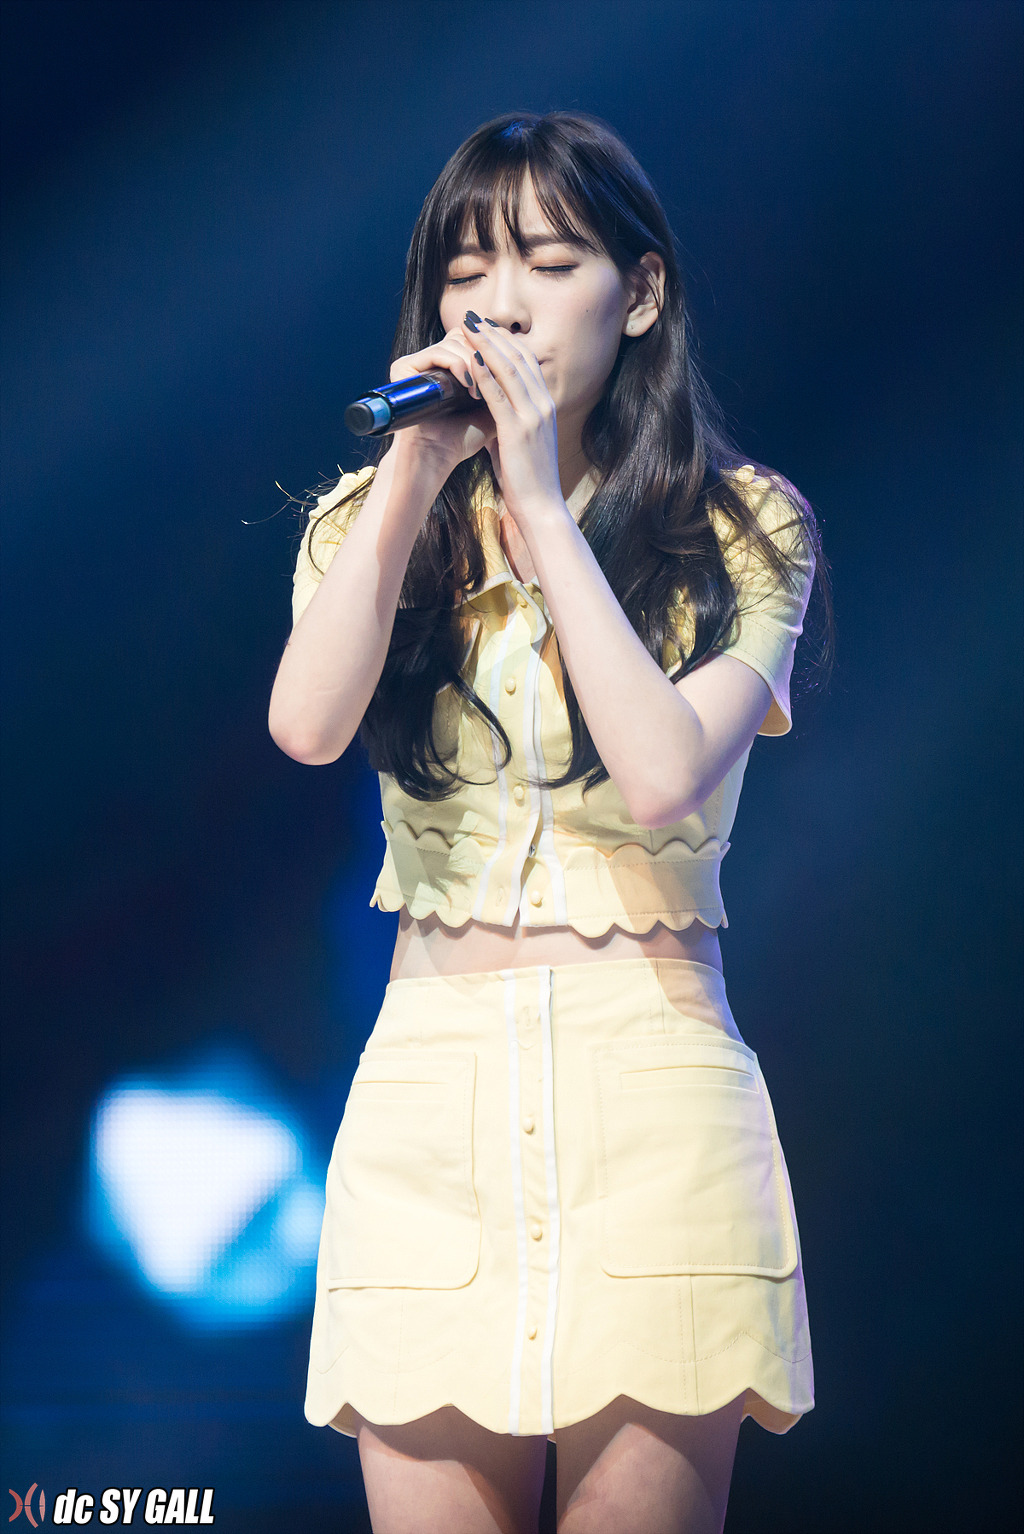 [PIC][15-03-2014]TaeTiSeo biểu diễn tại "Wapop Concert" vào tối nay - Page 2 2143FF445325C67A39E495